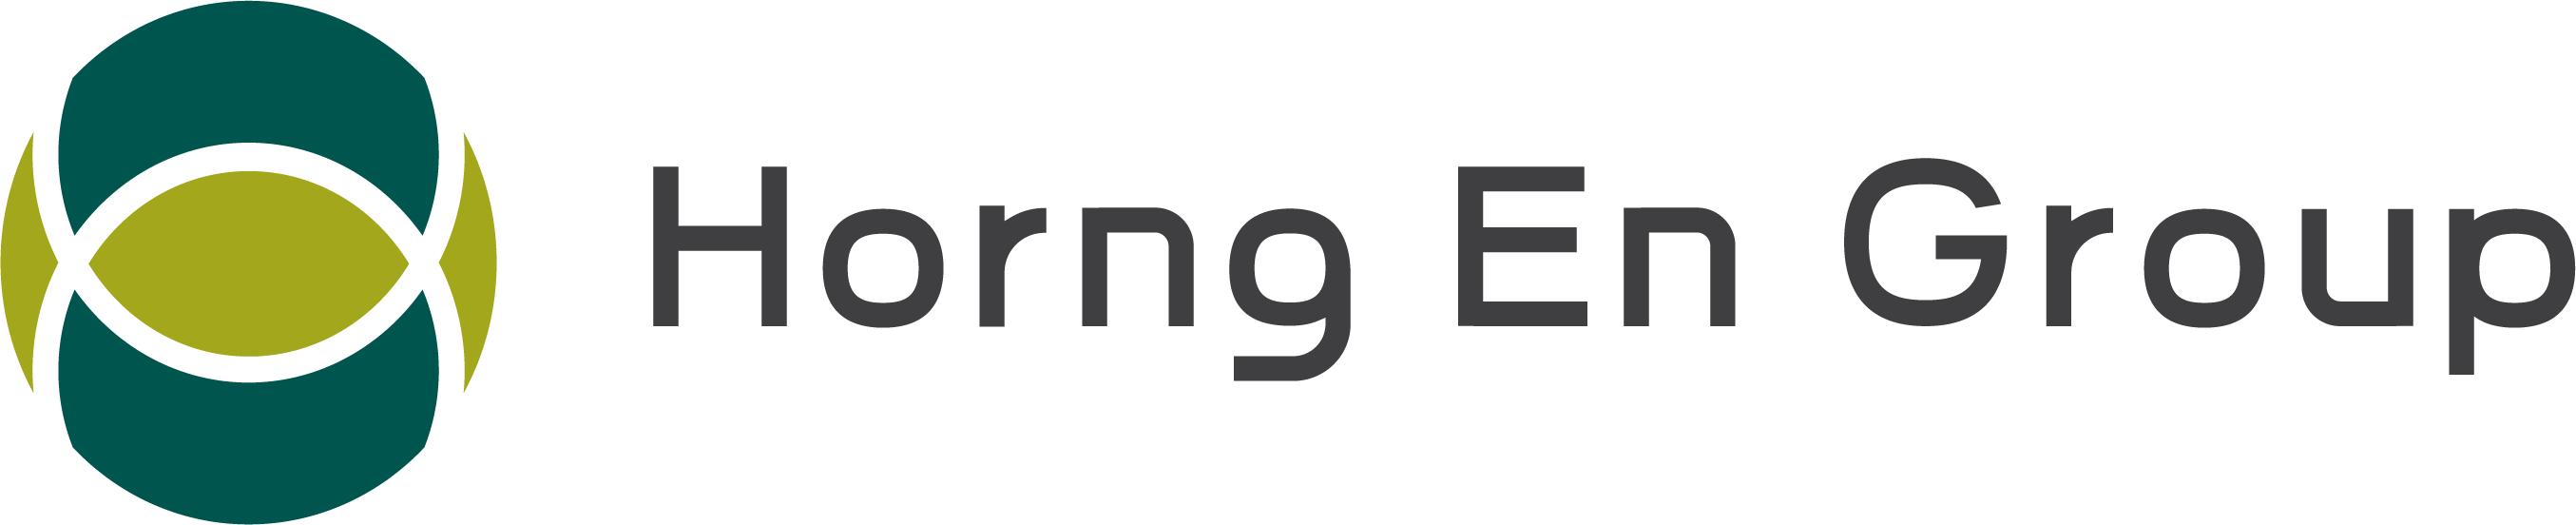 Horng En Group Logo - Shih-Hui Hung